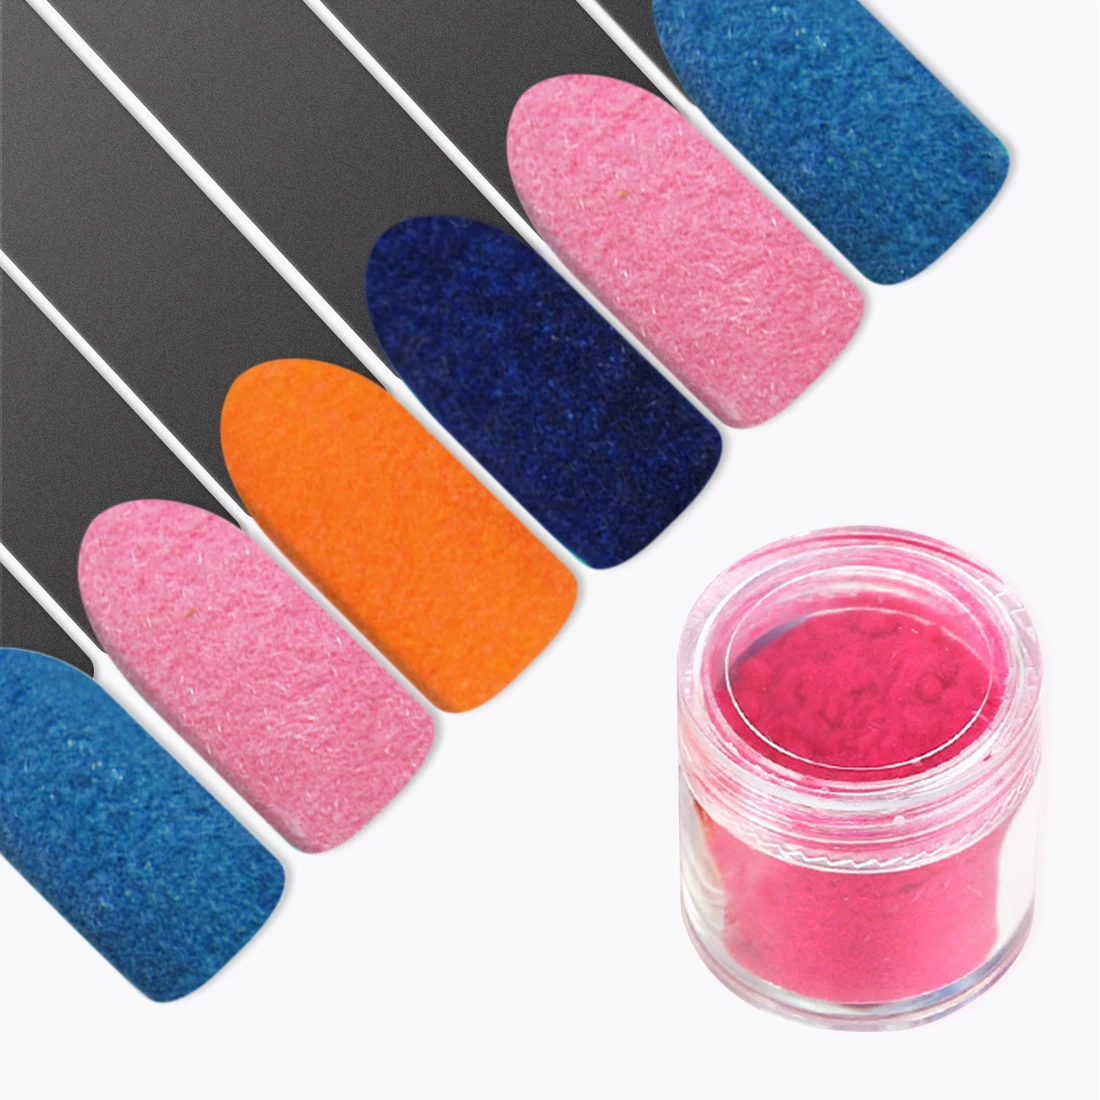 26 цветов DIY бархатный флокирующий порошок для бархатного маникюра дизайн ногтей лак акриловые порошки жидкости